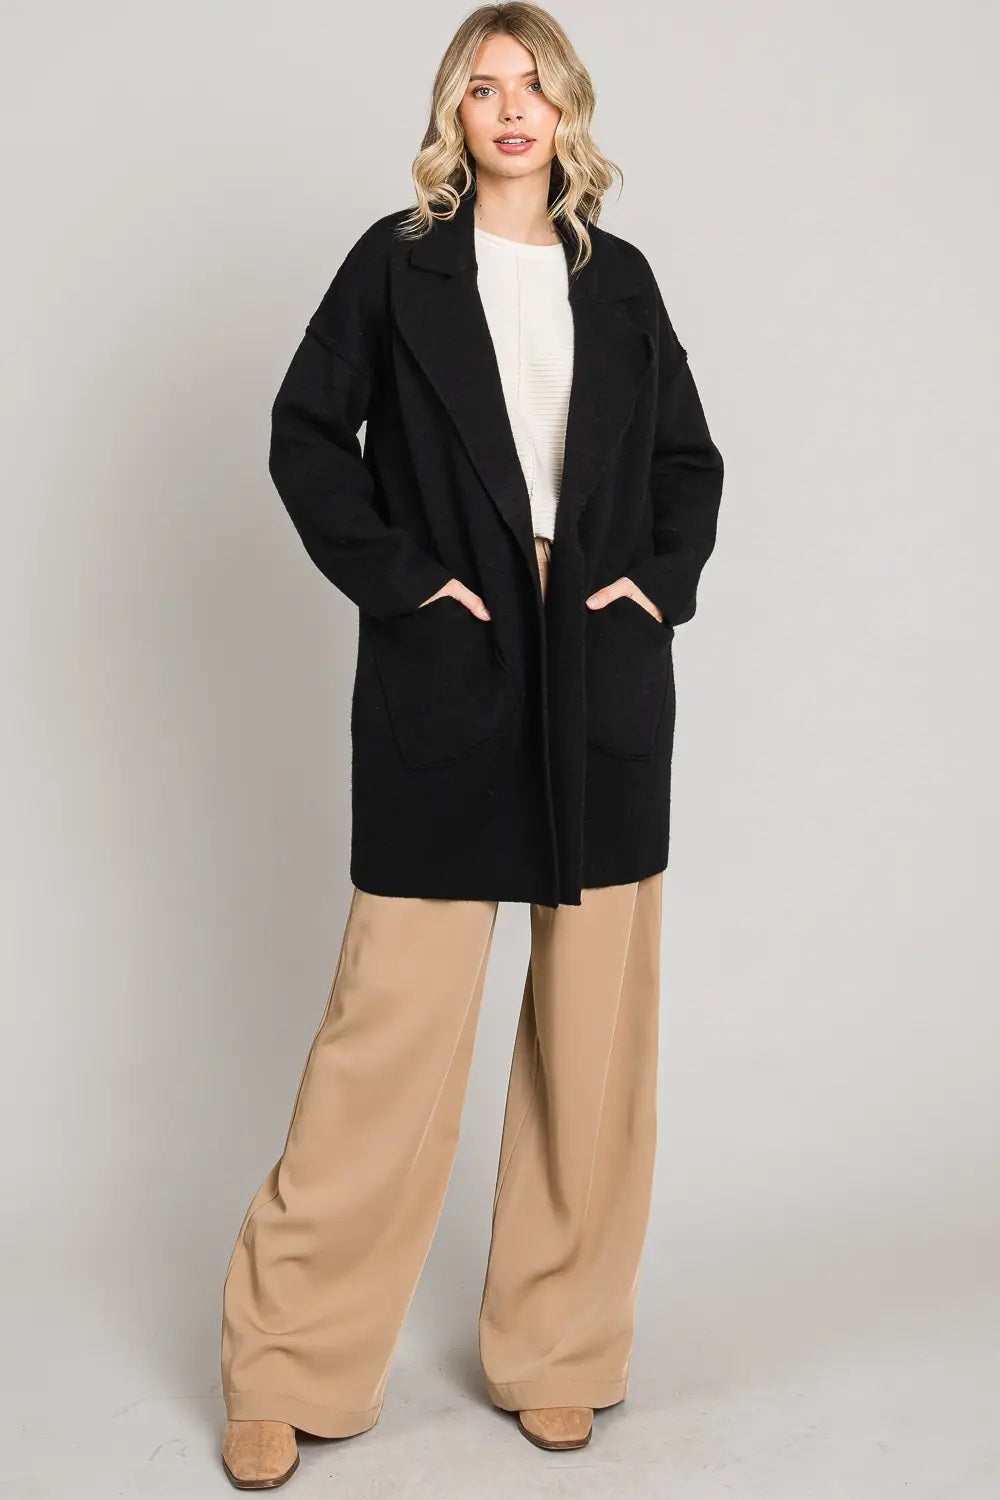 Allie Rose, Coatigan with Large Front Pockets in Black - Boutique Dandelion